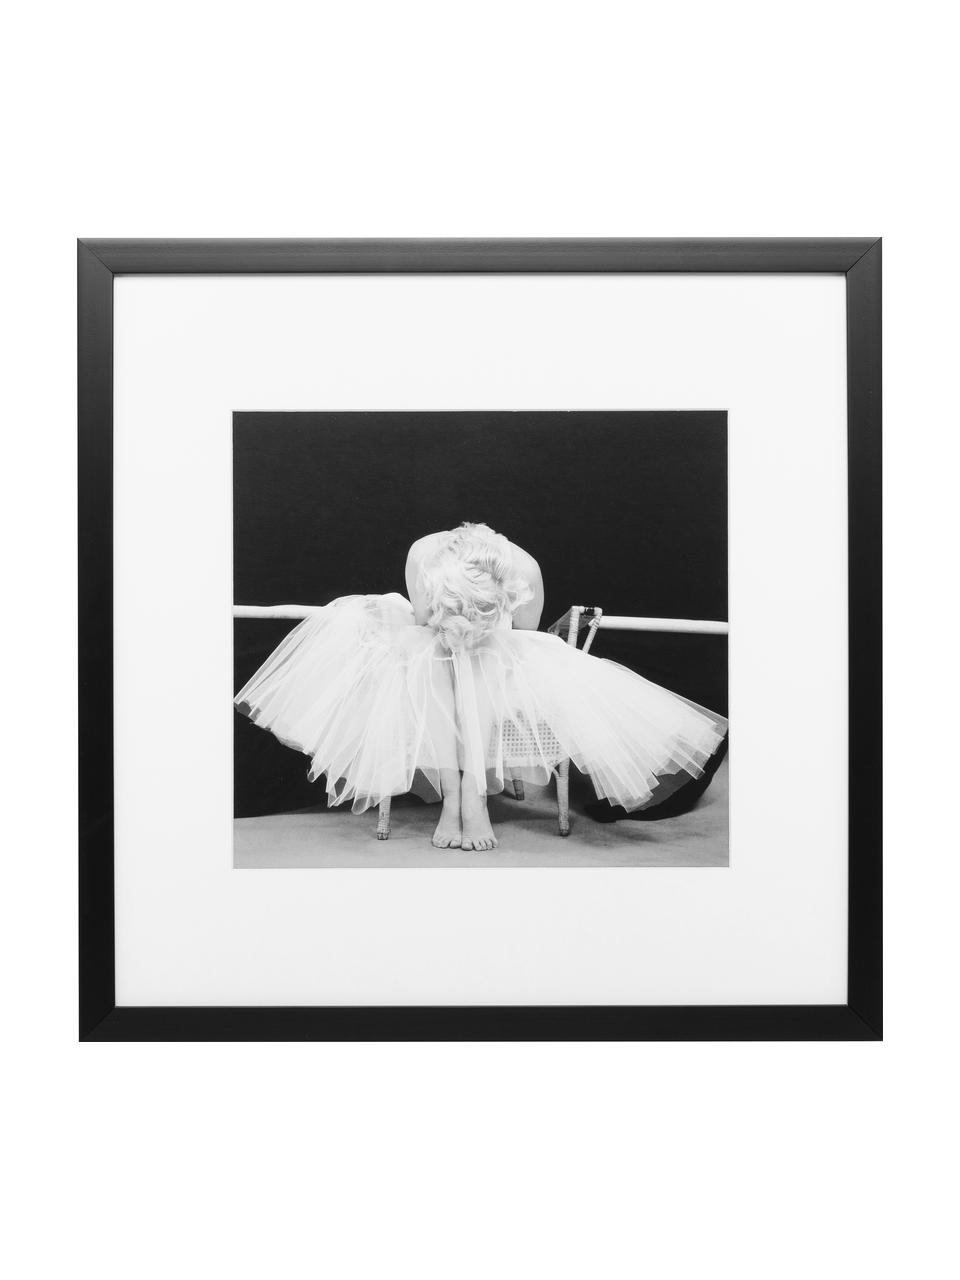 Gerahmter Digitaldruck Ballerina, Bild: Digitaldruck, Rahmen: Kunststoff, Front: Glas, Bild: Schwarz, Weiß Rahmen: Schwarz, B 40 x H 40 cm